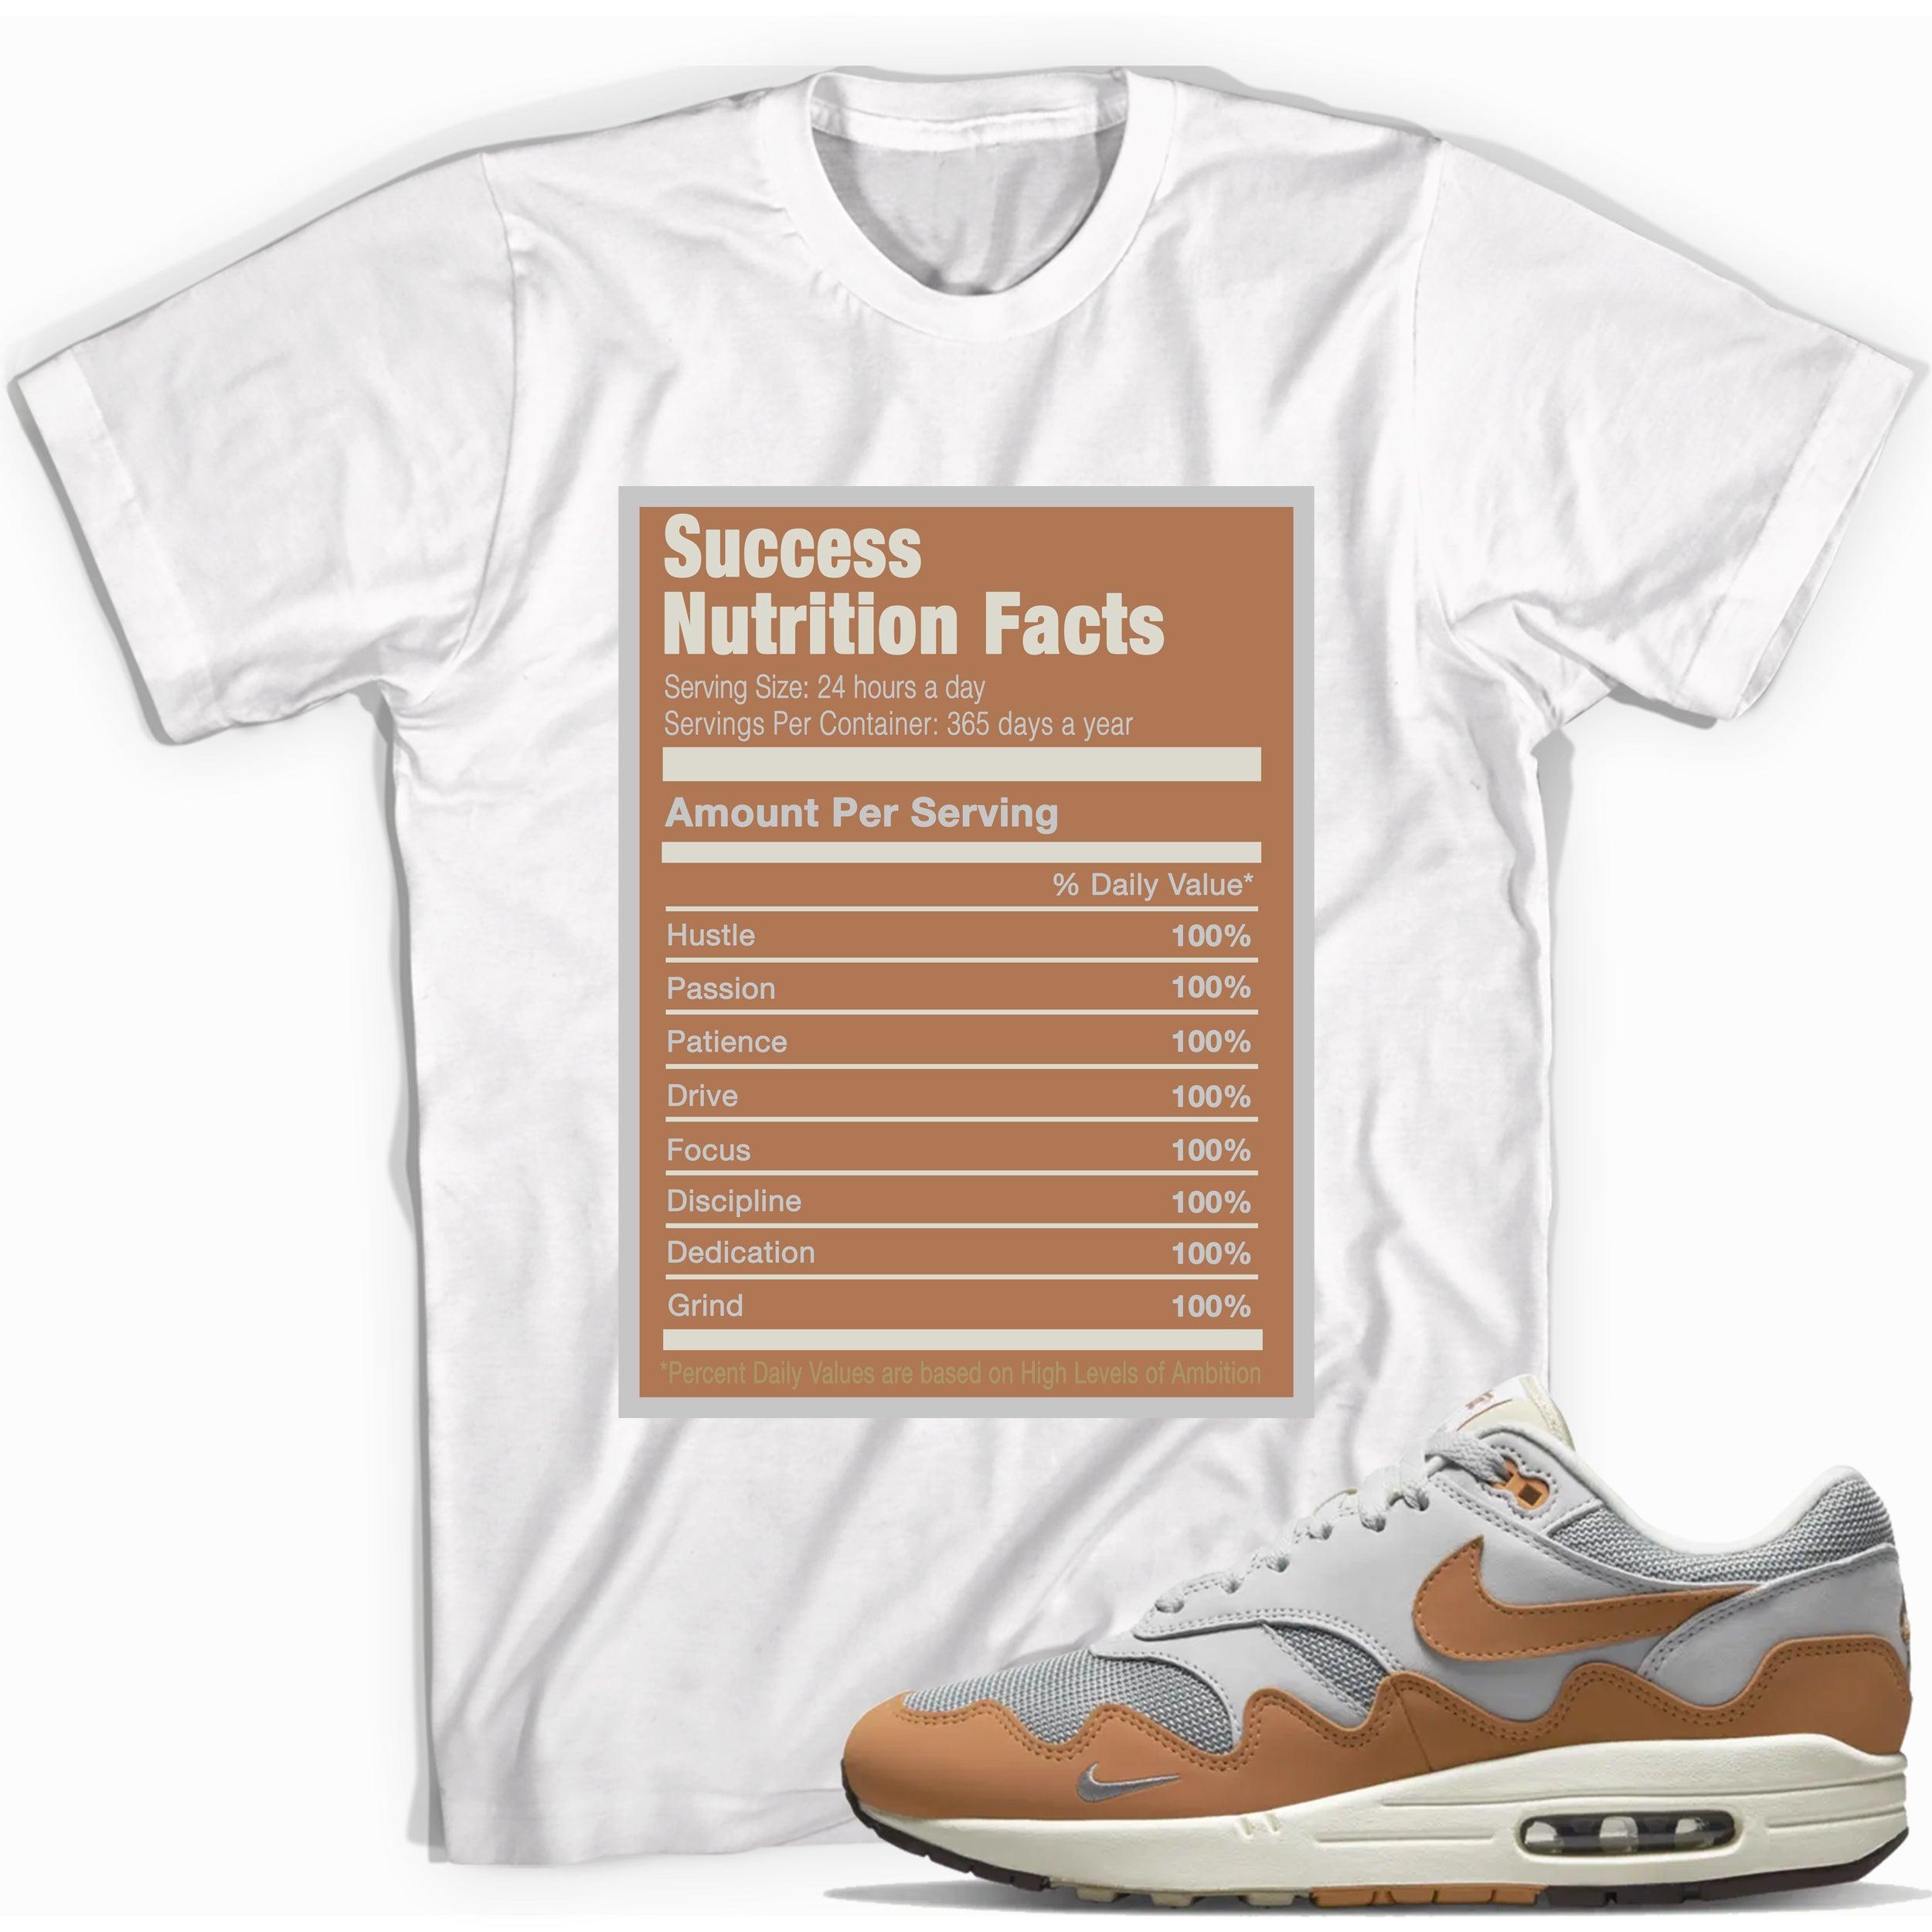 Success Nutrition Facts Sneaker Tee Air Max 1 x Patta photo